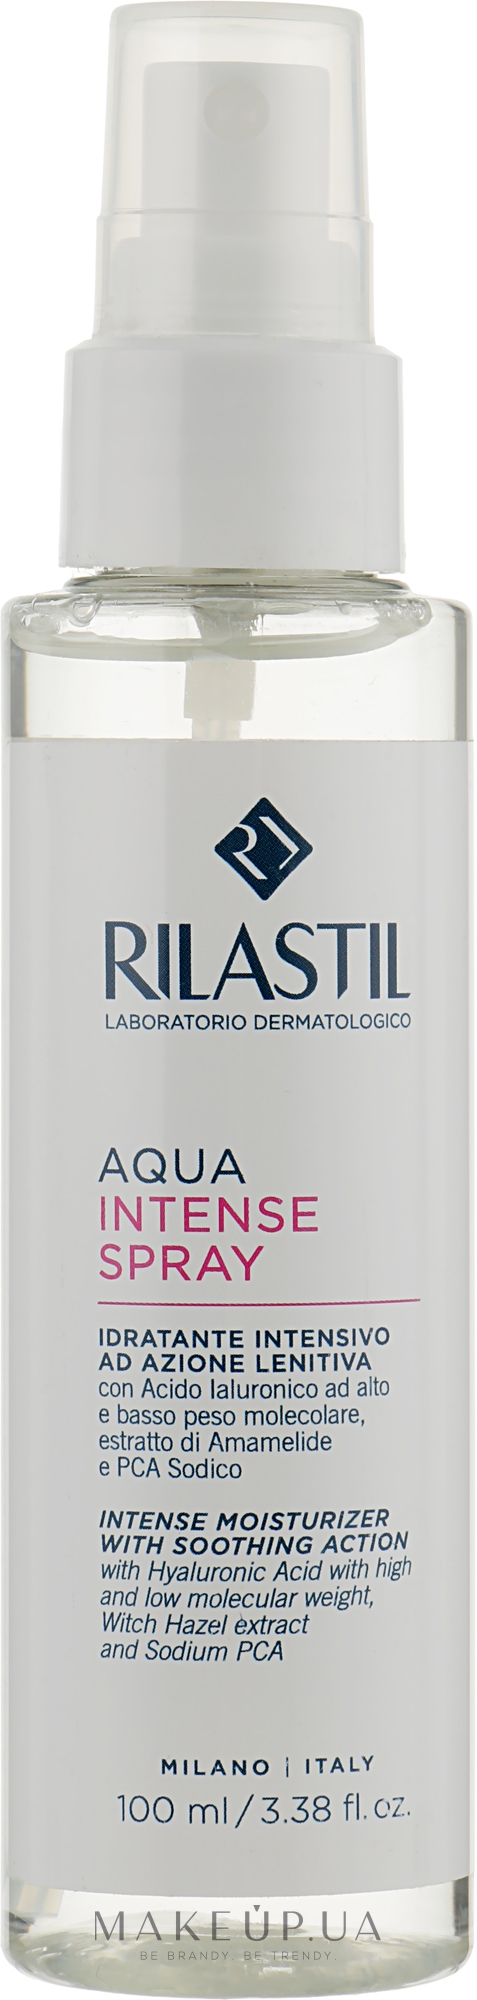 Интенсивный увлажняющий спрей для лица - Rilastil Aqua Intense Spray — фото 100ml